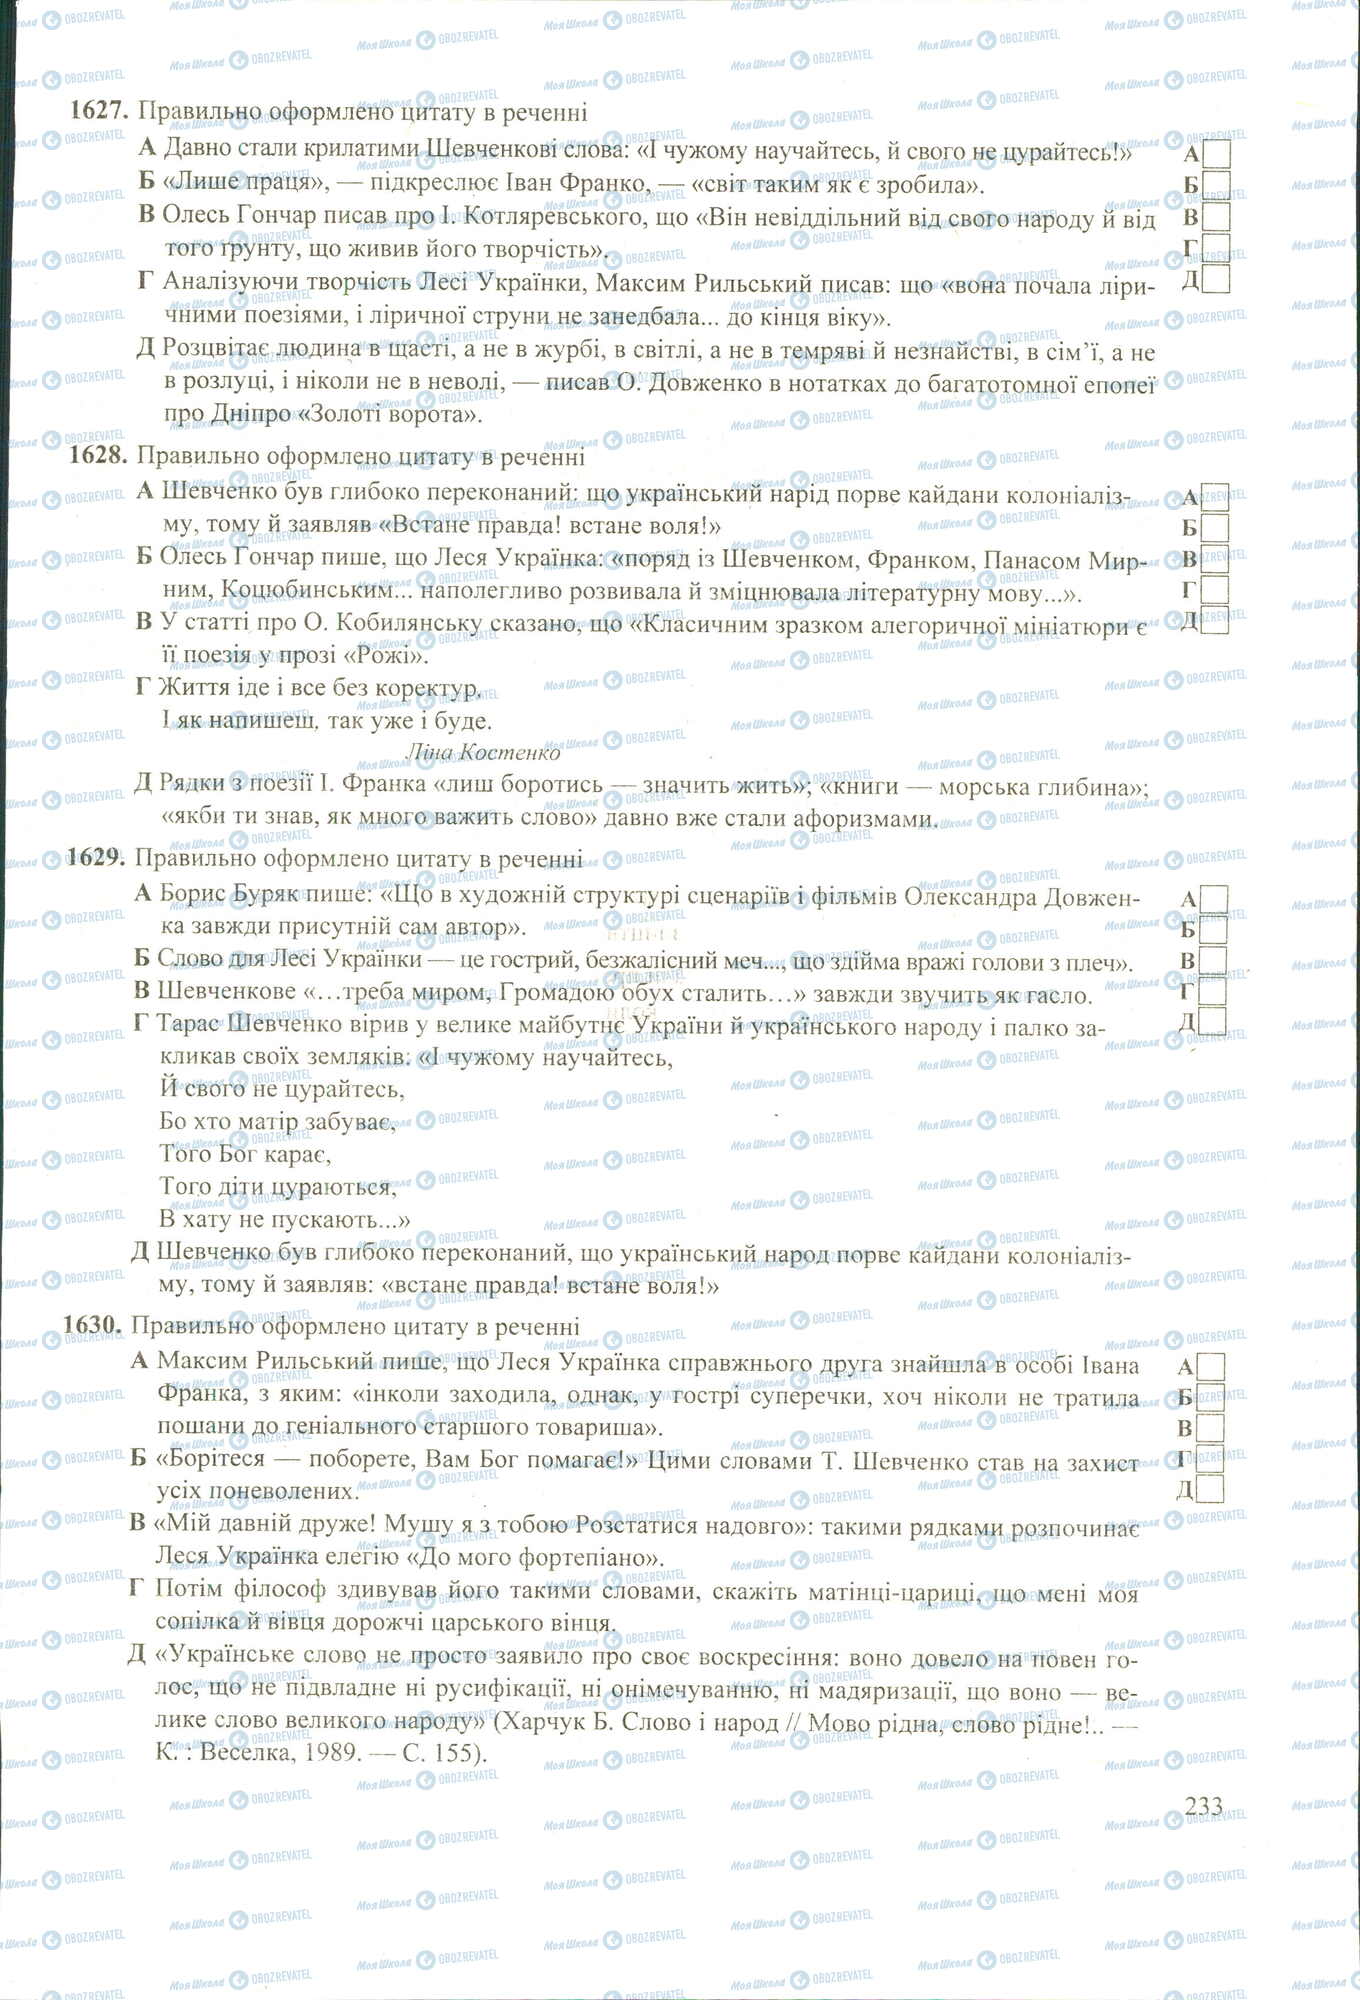 ЗНО Укр мова 11 класс страница 1627-1630